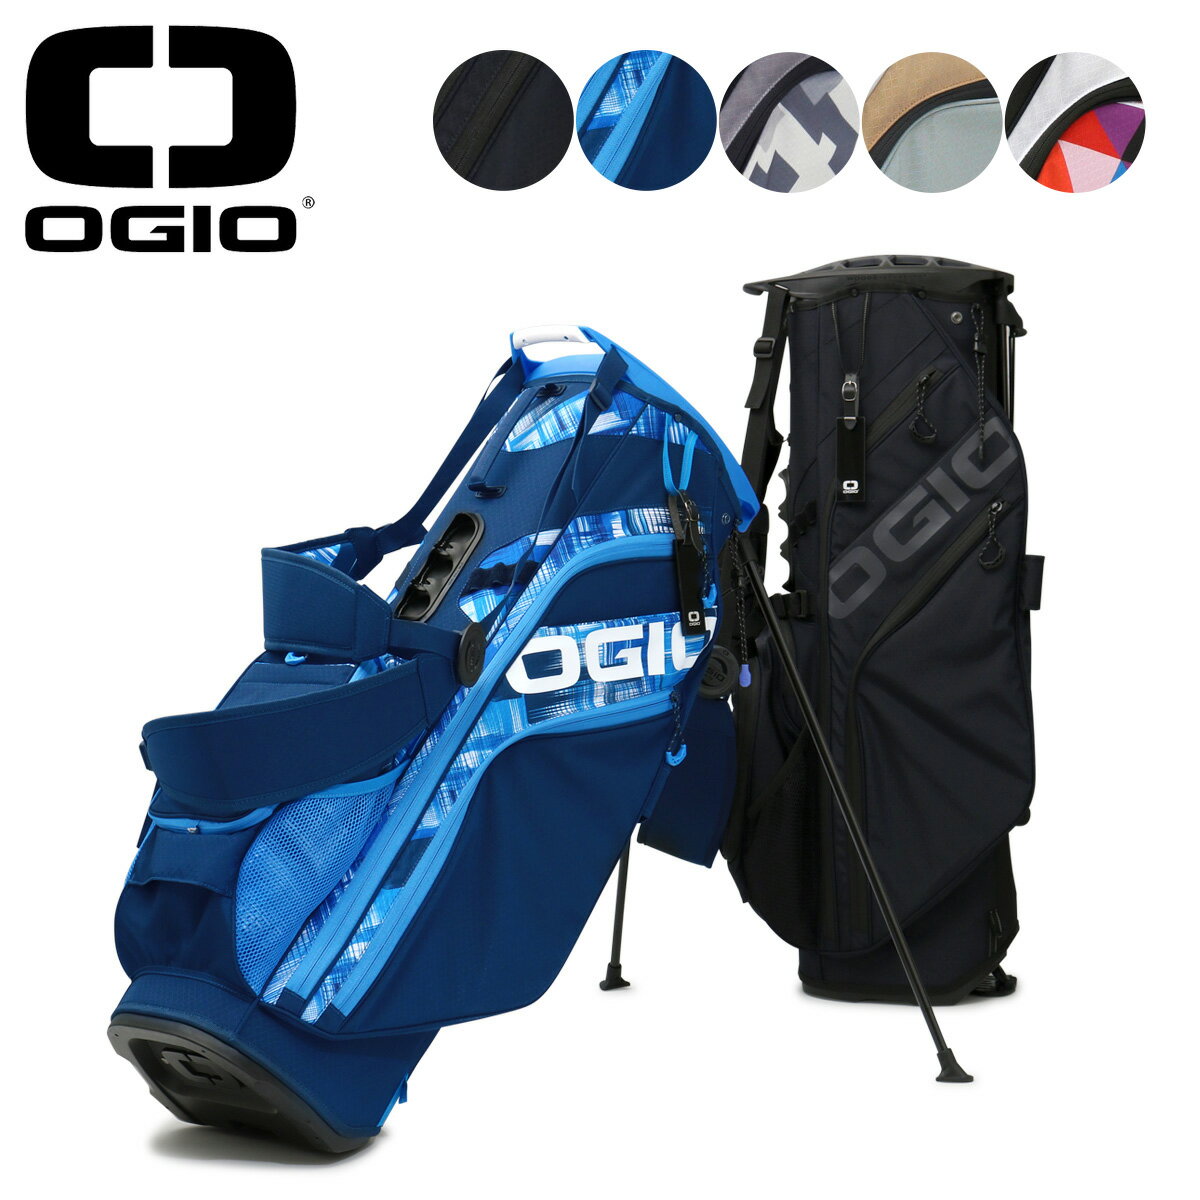 オジオ ゴルフ キャディバッグ スタンド型 8分割 10型 47インチ 2.5kg メンズ レディース OGIO BG OG STN WOODE HYBRID 23 ゴルフバッグ[PO10][即日発送]